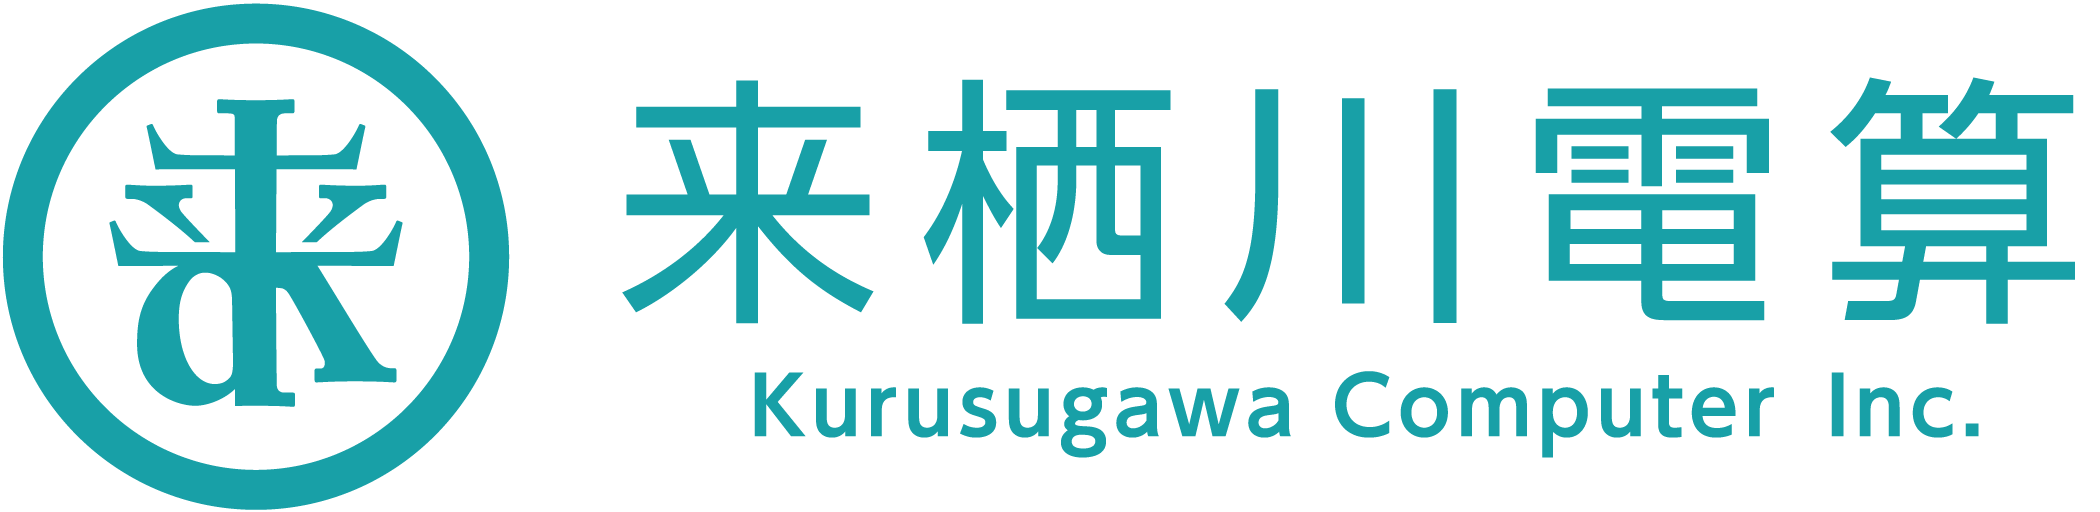 Kurusugawa